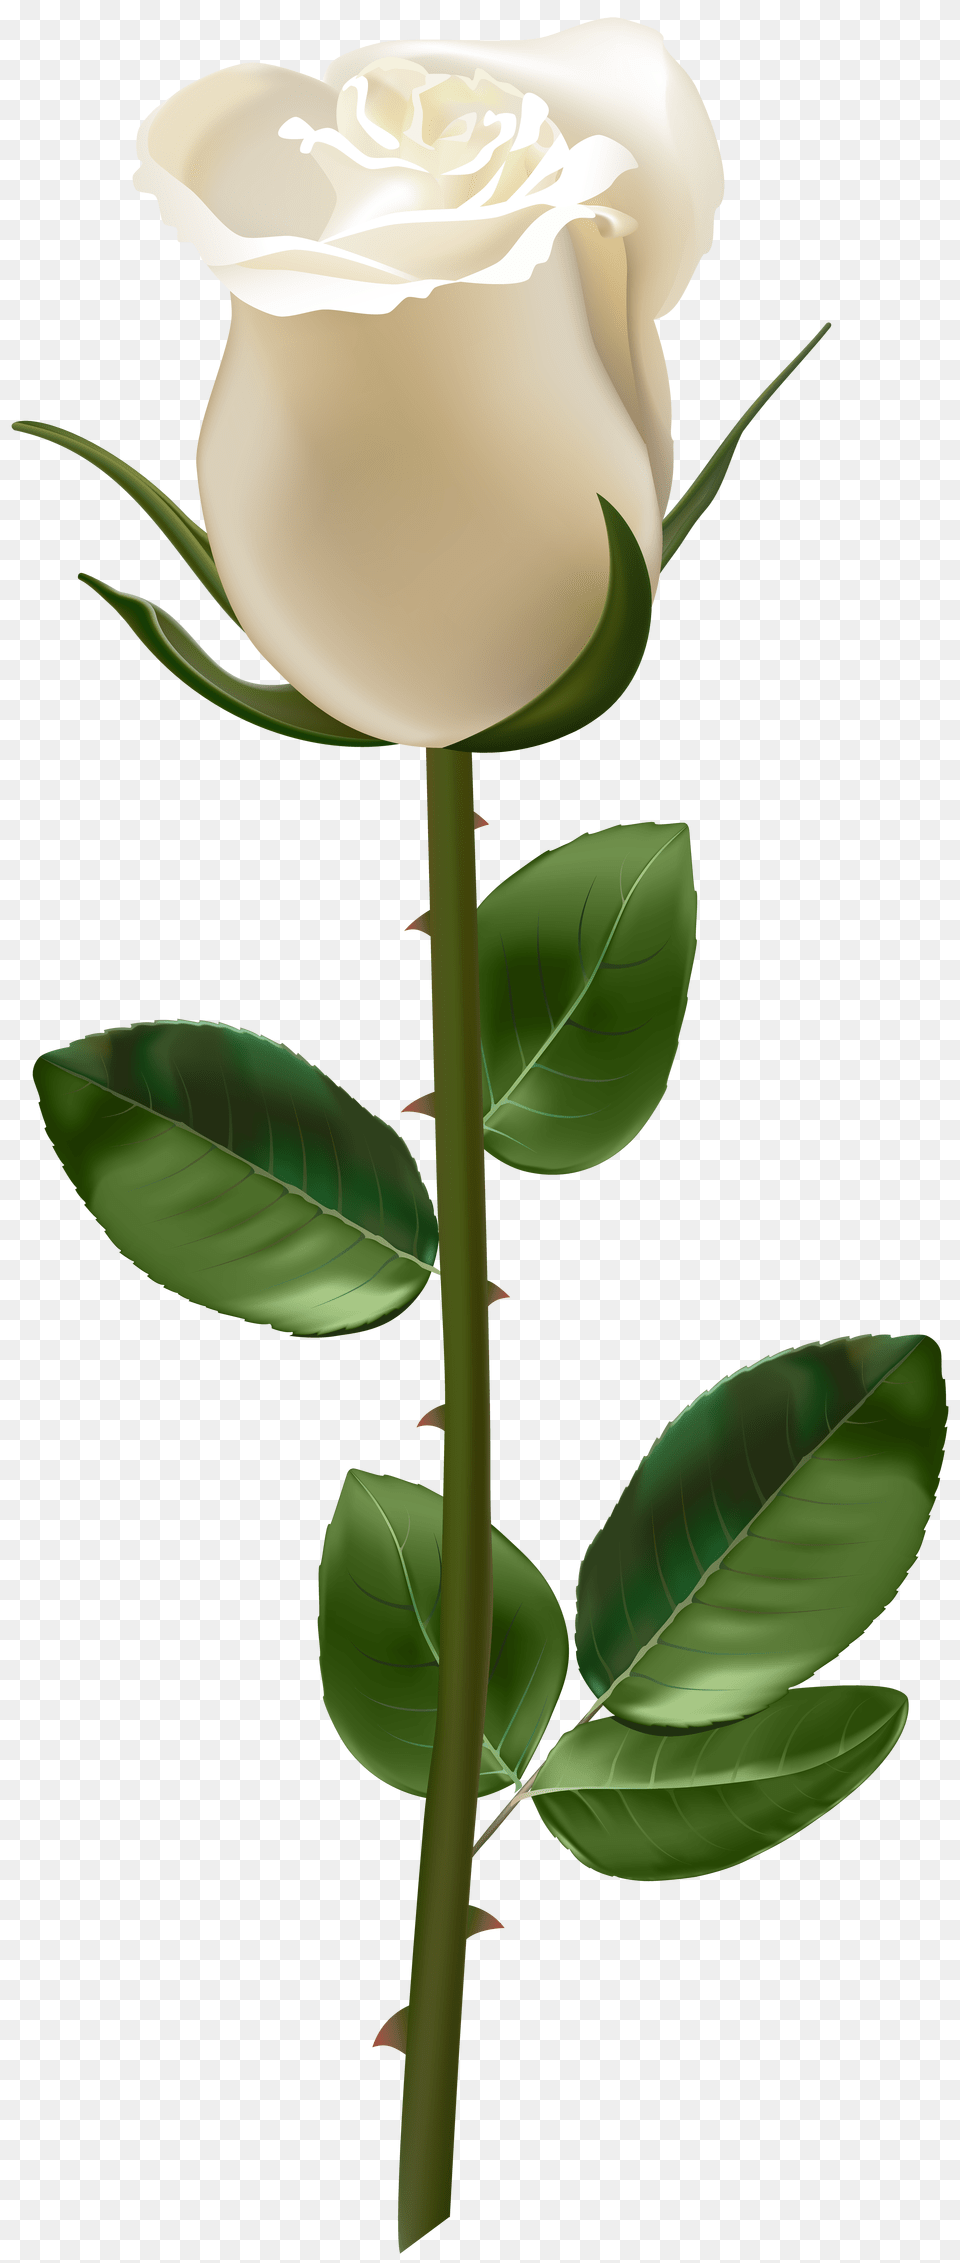 Rose With Stem White Transparent, Flower, Plant, Leaf Png Image